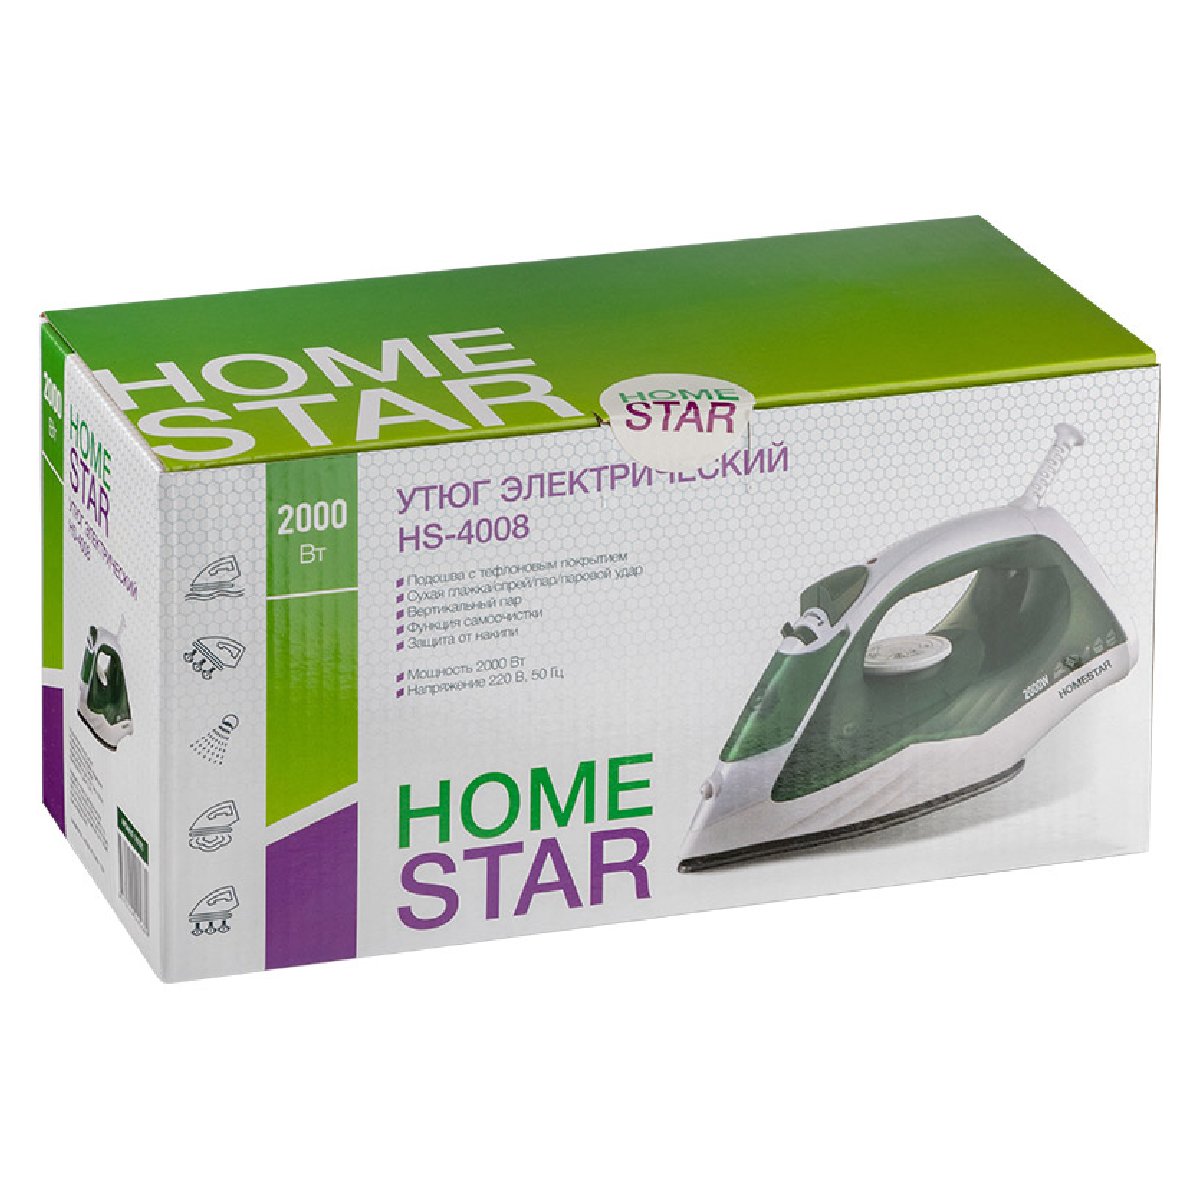 Утюг HomeStar HS-4008 бело-зеленый (2000Вт, пар, тефлоновая подошва, антинакипь) (105375)